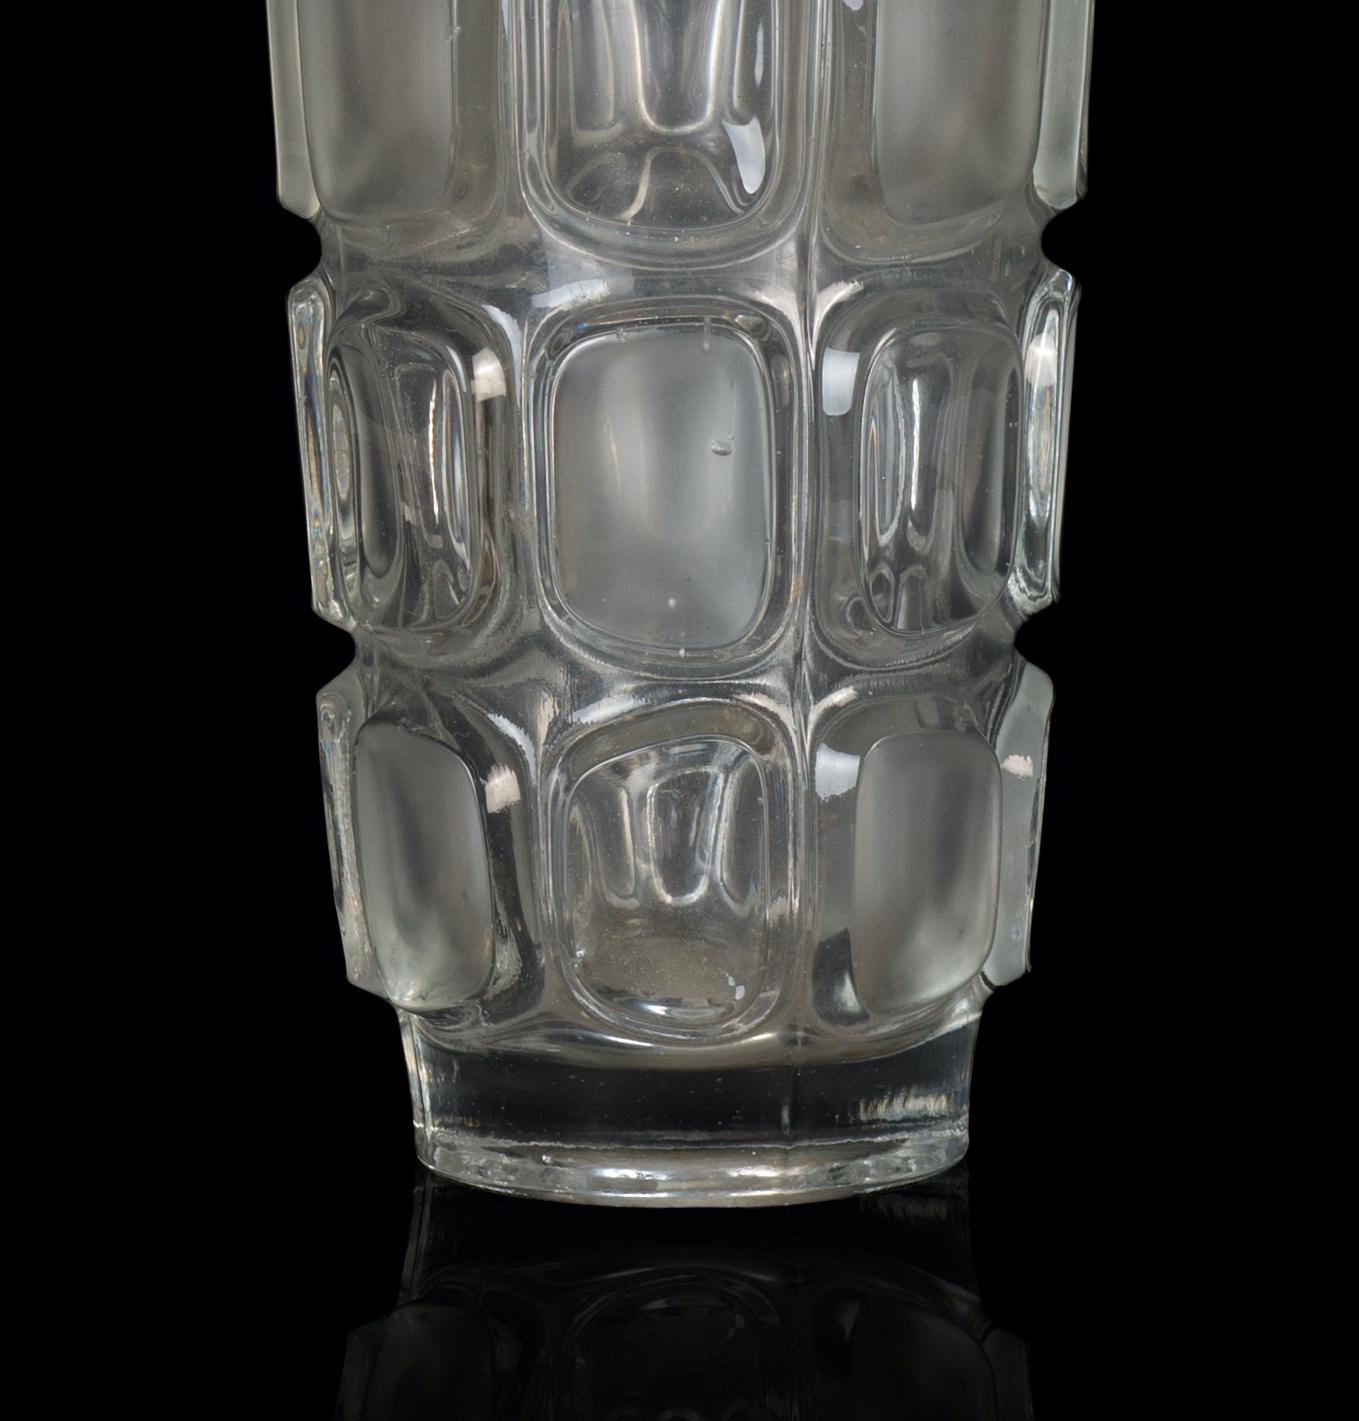 Le vase cylindrique en verre est un magnifique objet décoratif en verre, réalisé par une manufacture italienne dans les années 1970.

Vase très à la mode avec des décorations rectangulaires en relief le long du corps.

Bonnes conditions.